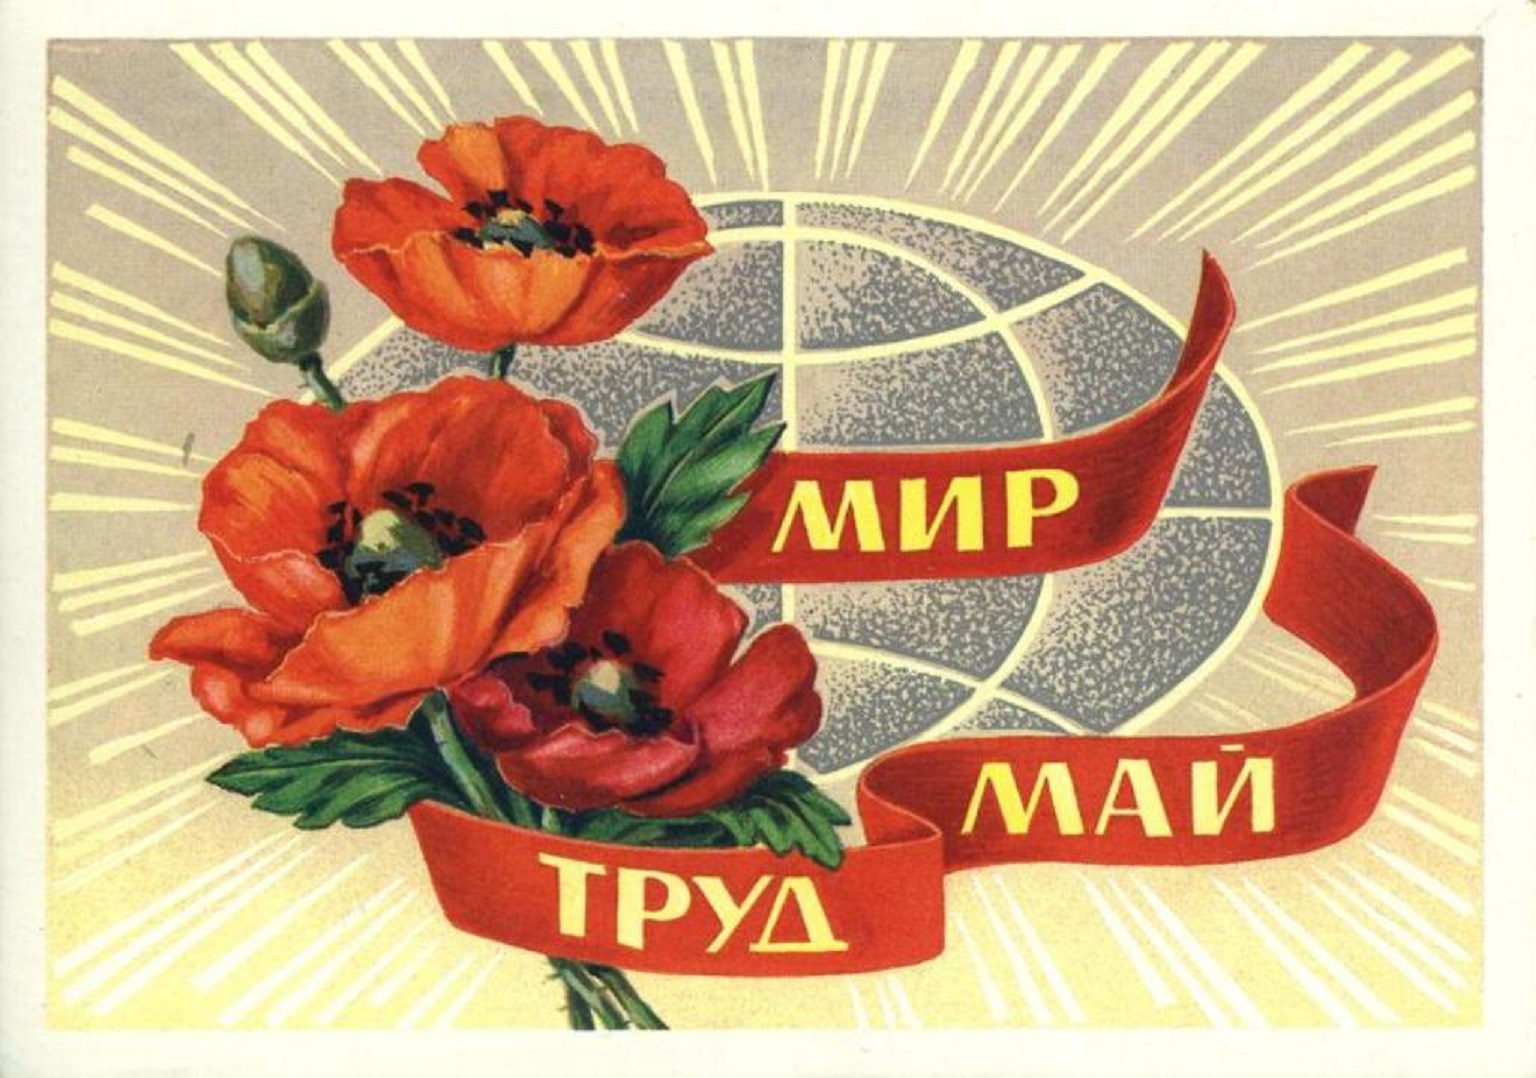 1 мая 2016 года. Мир труд май. 1 Мая мир труд май. Мир труд май открытка. Открытка 1 мая праздник весны и труда.